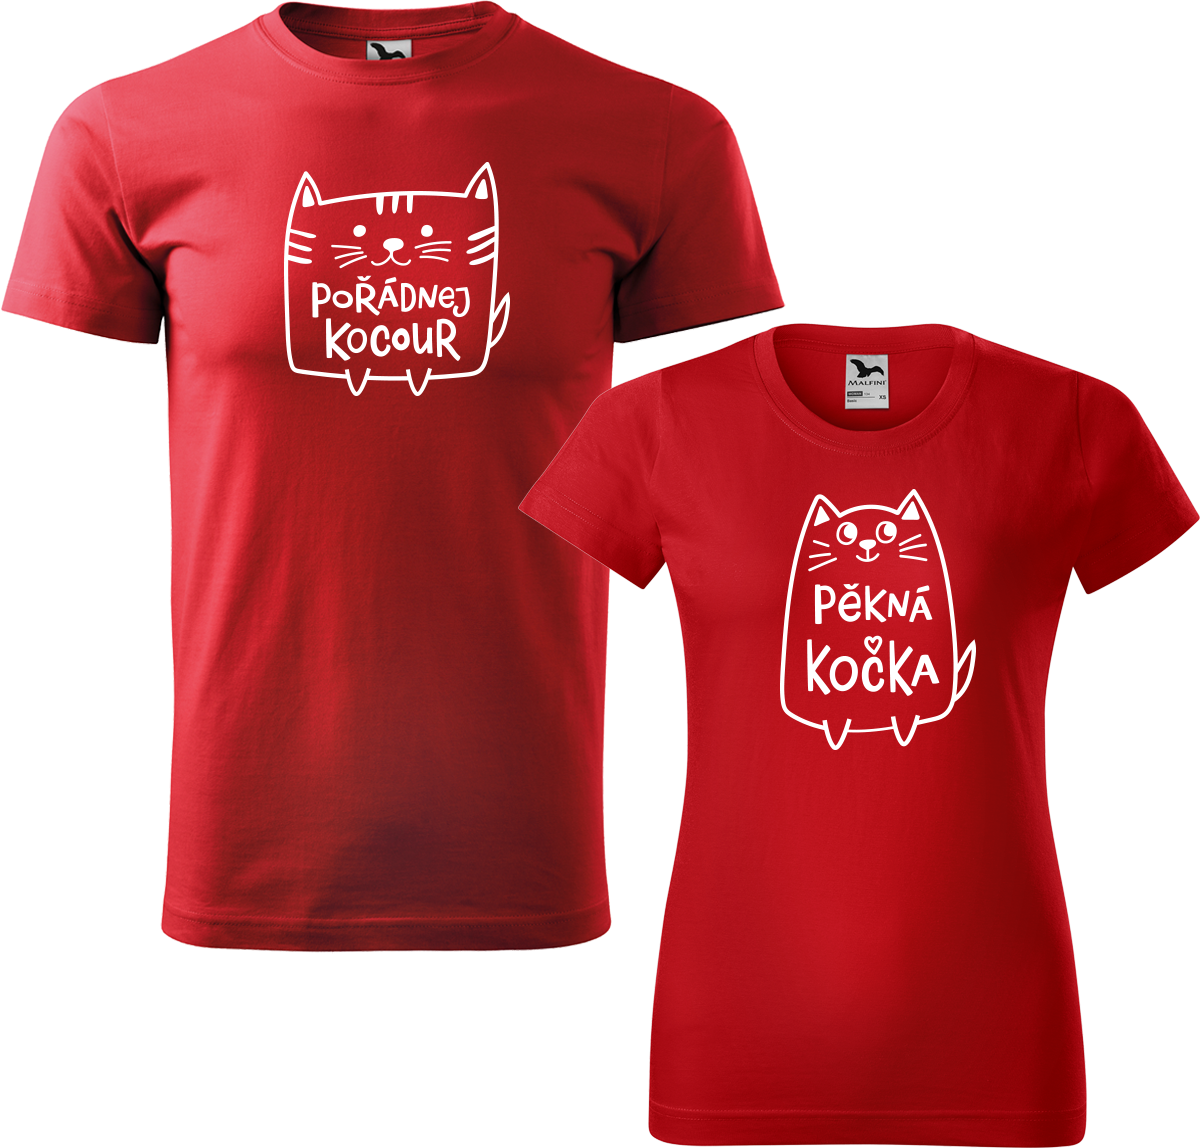 Trička pro páry - Pořádnej kocour a pěkná kočka Barva: Červená (07), Velikost dámské tričko: M, Velikost pánské tričko: M